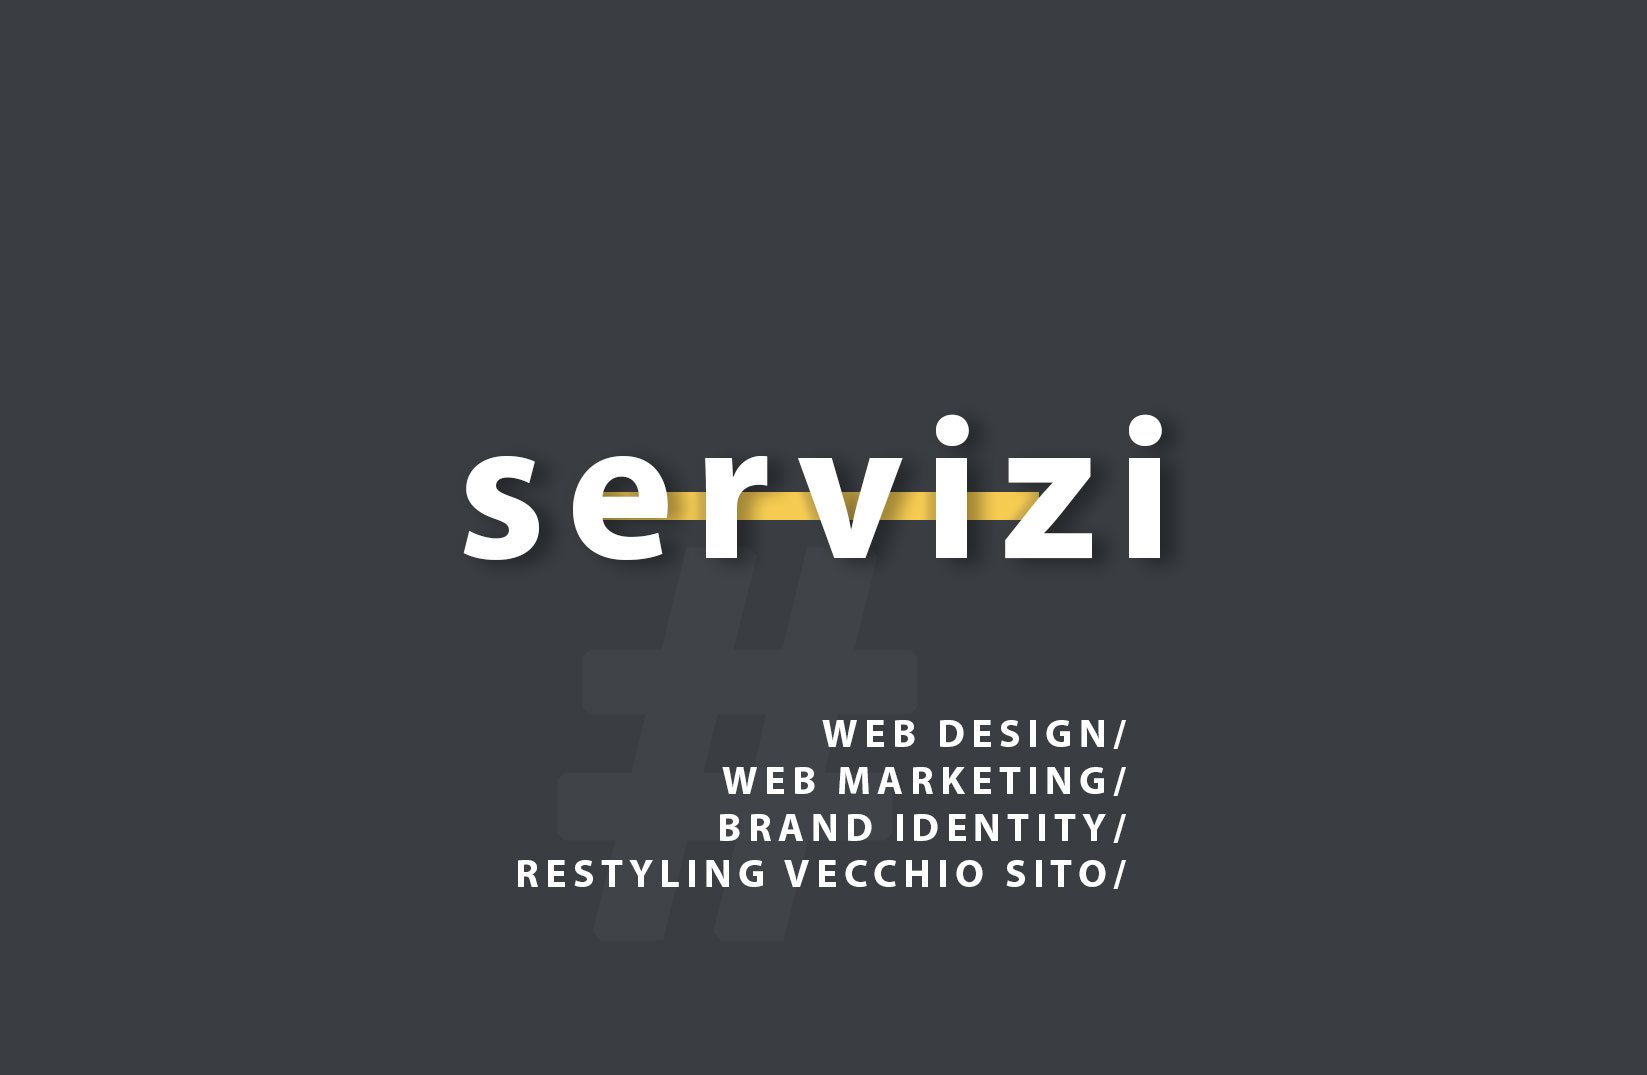 servizi posizionamento seo, web design e restyling sito